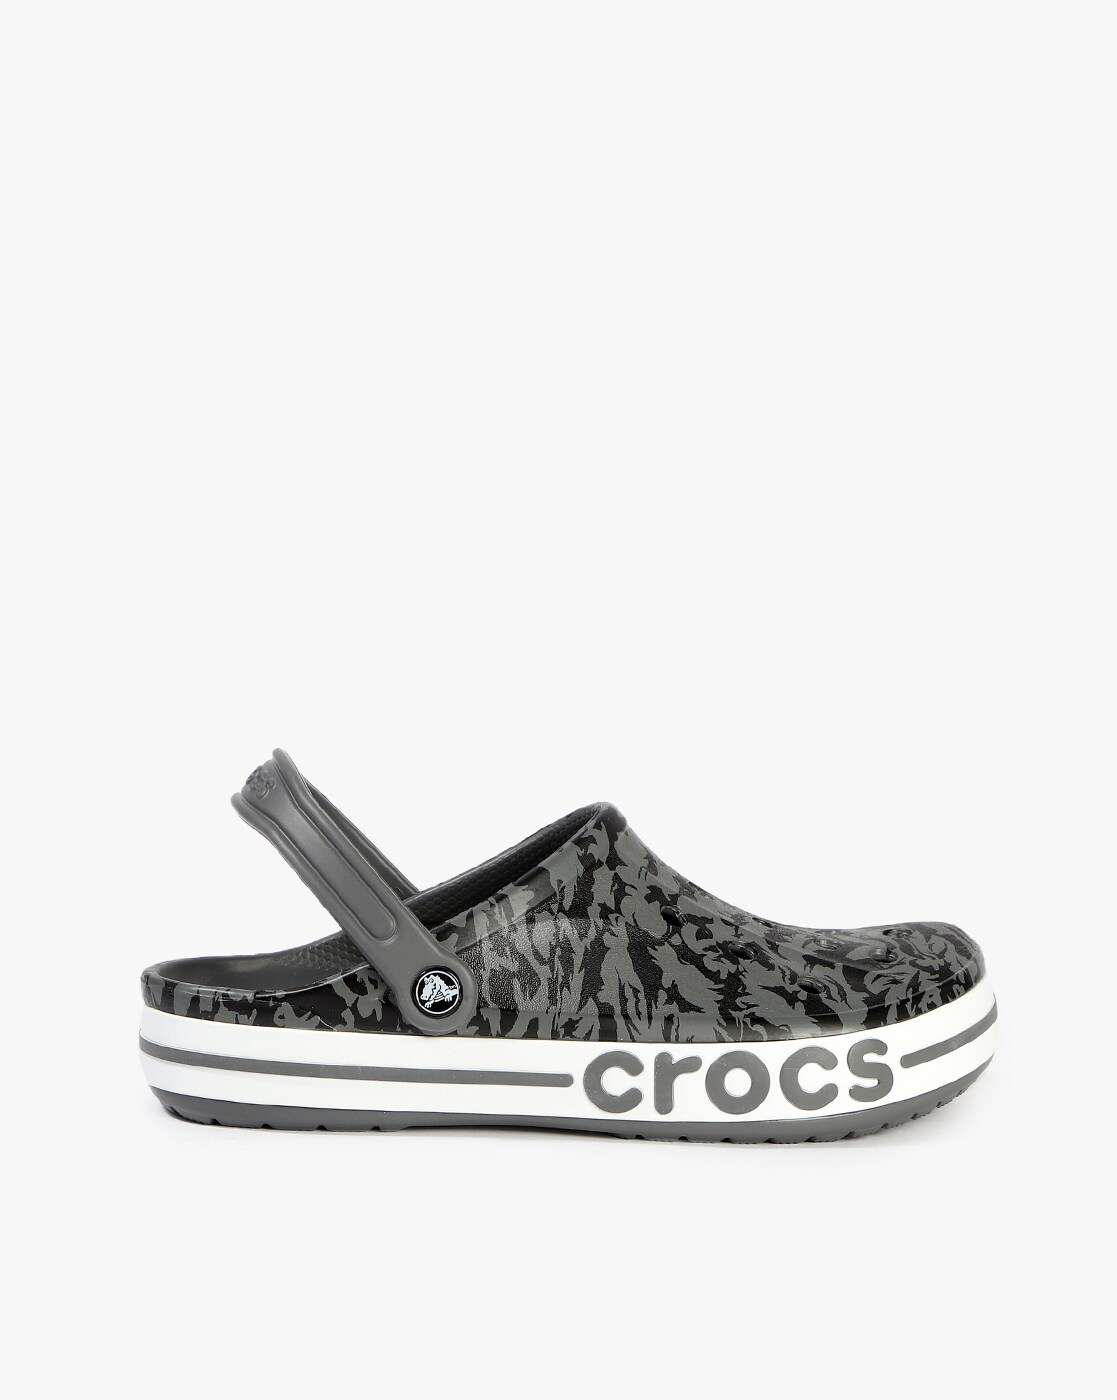 printed crocs for men